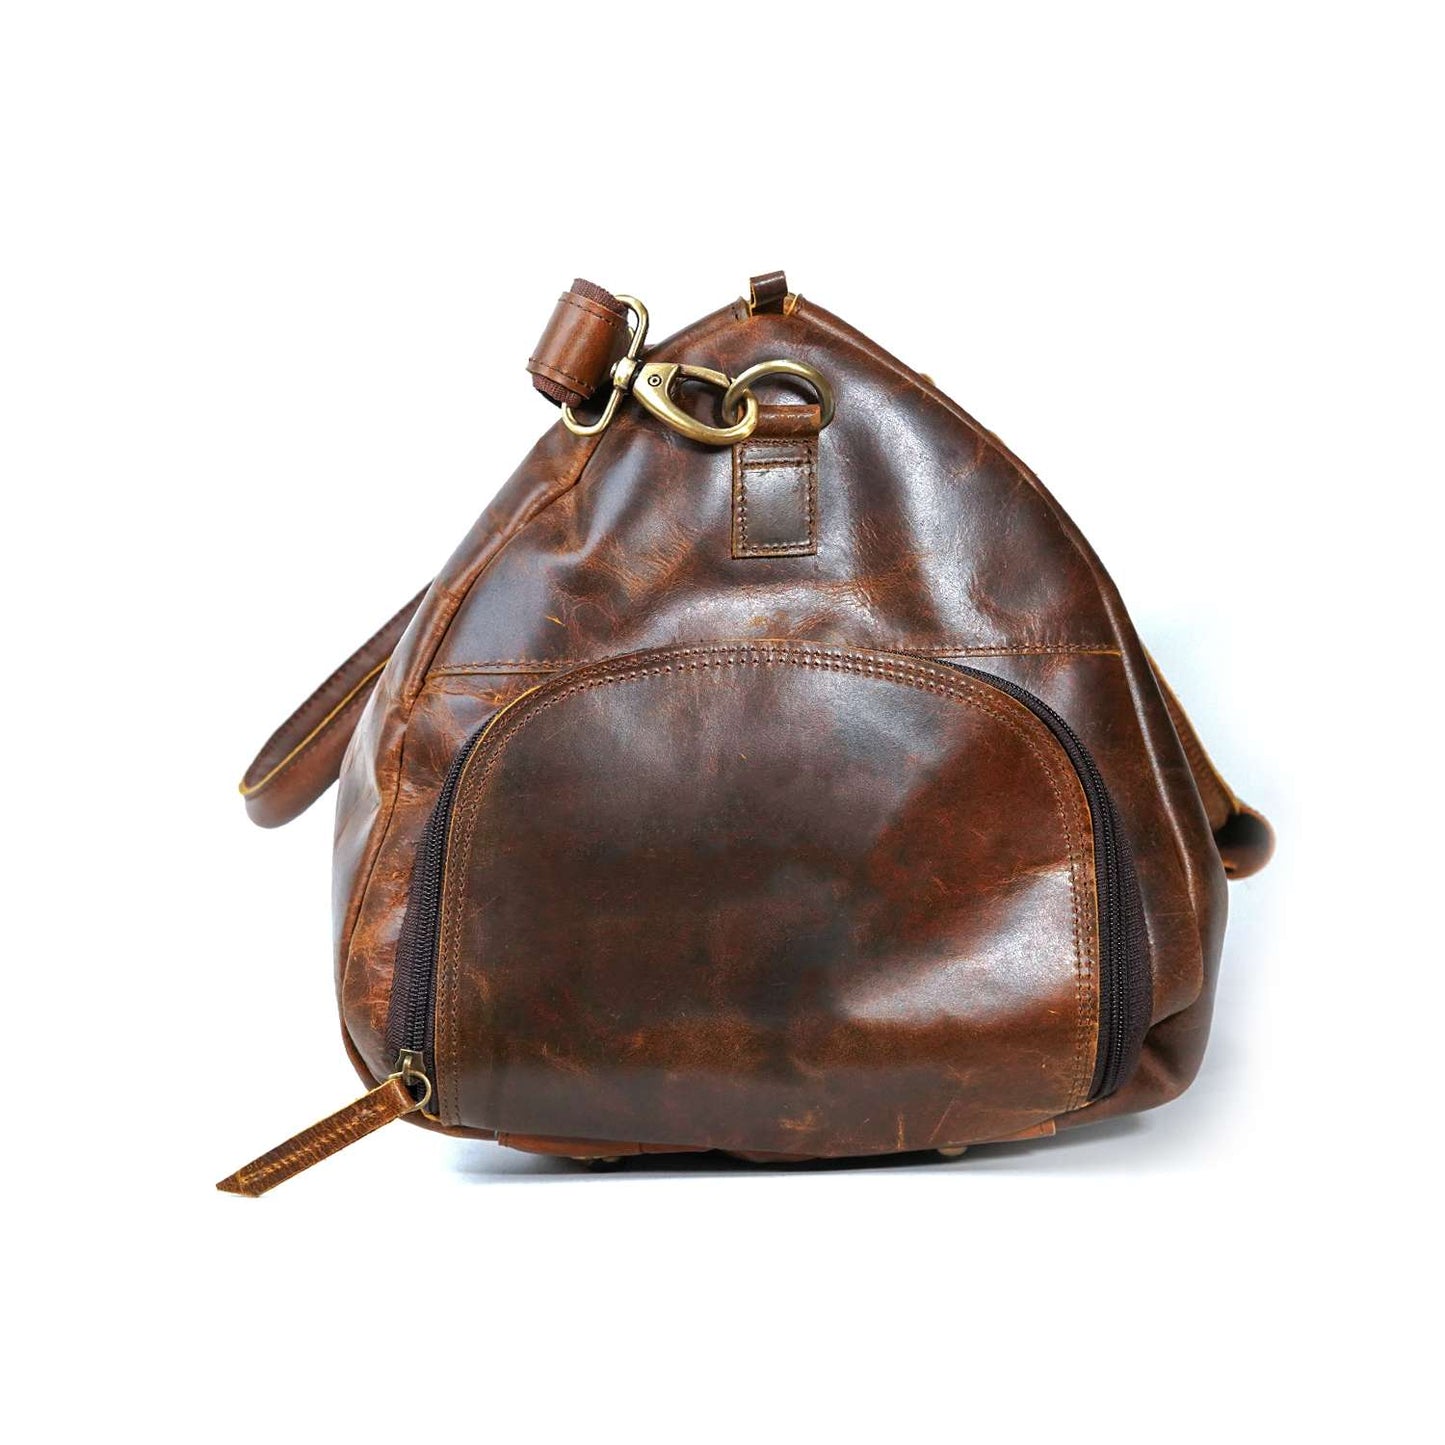 Hunter Leather Weekender Bag